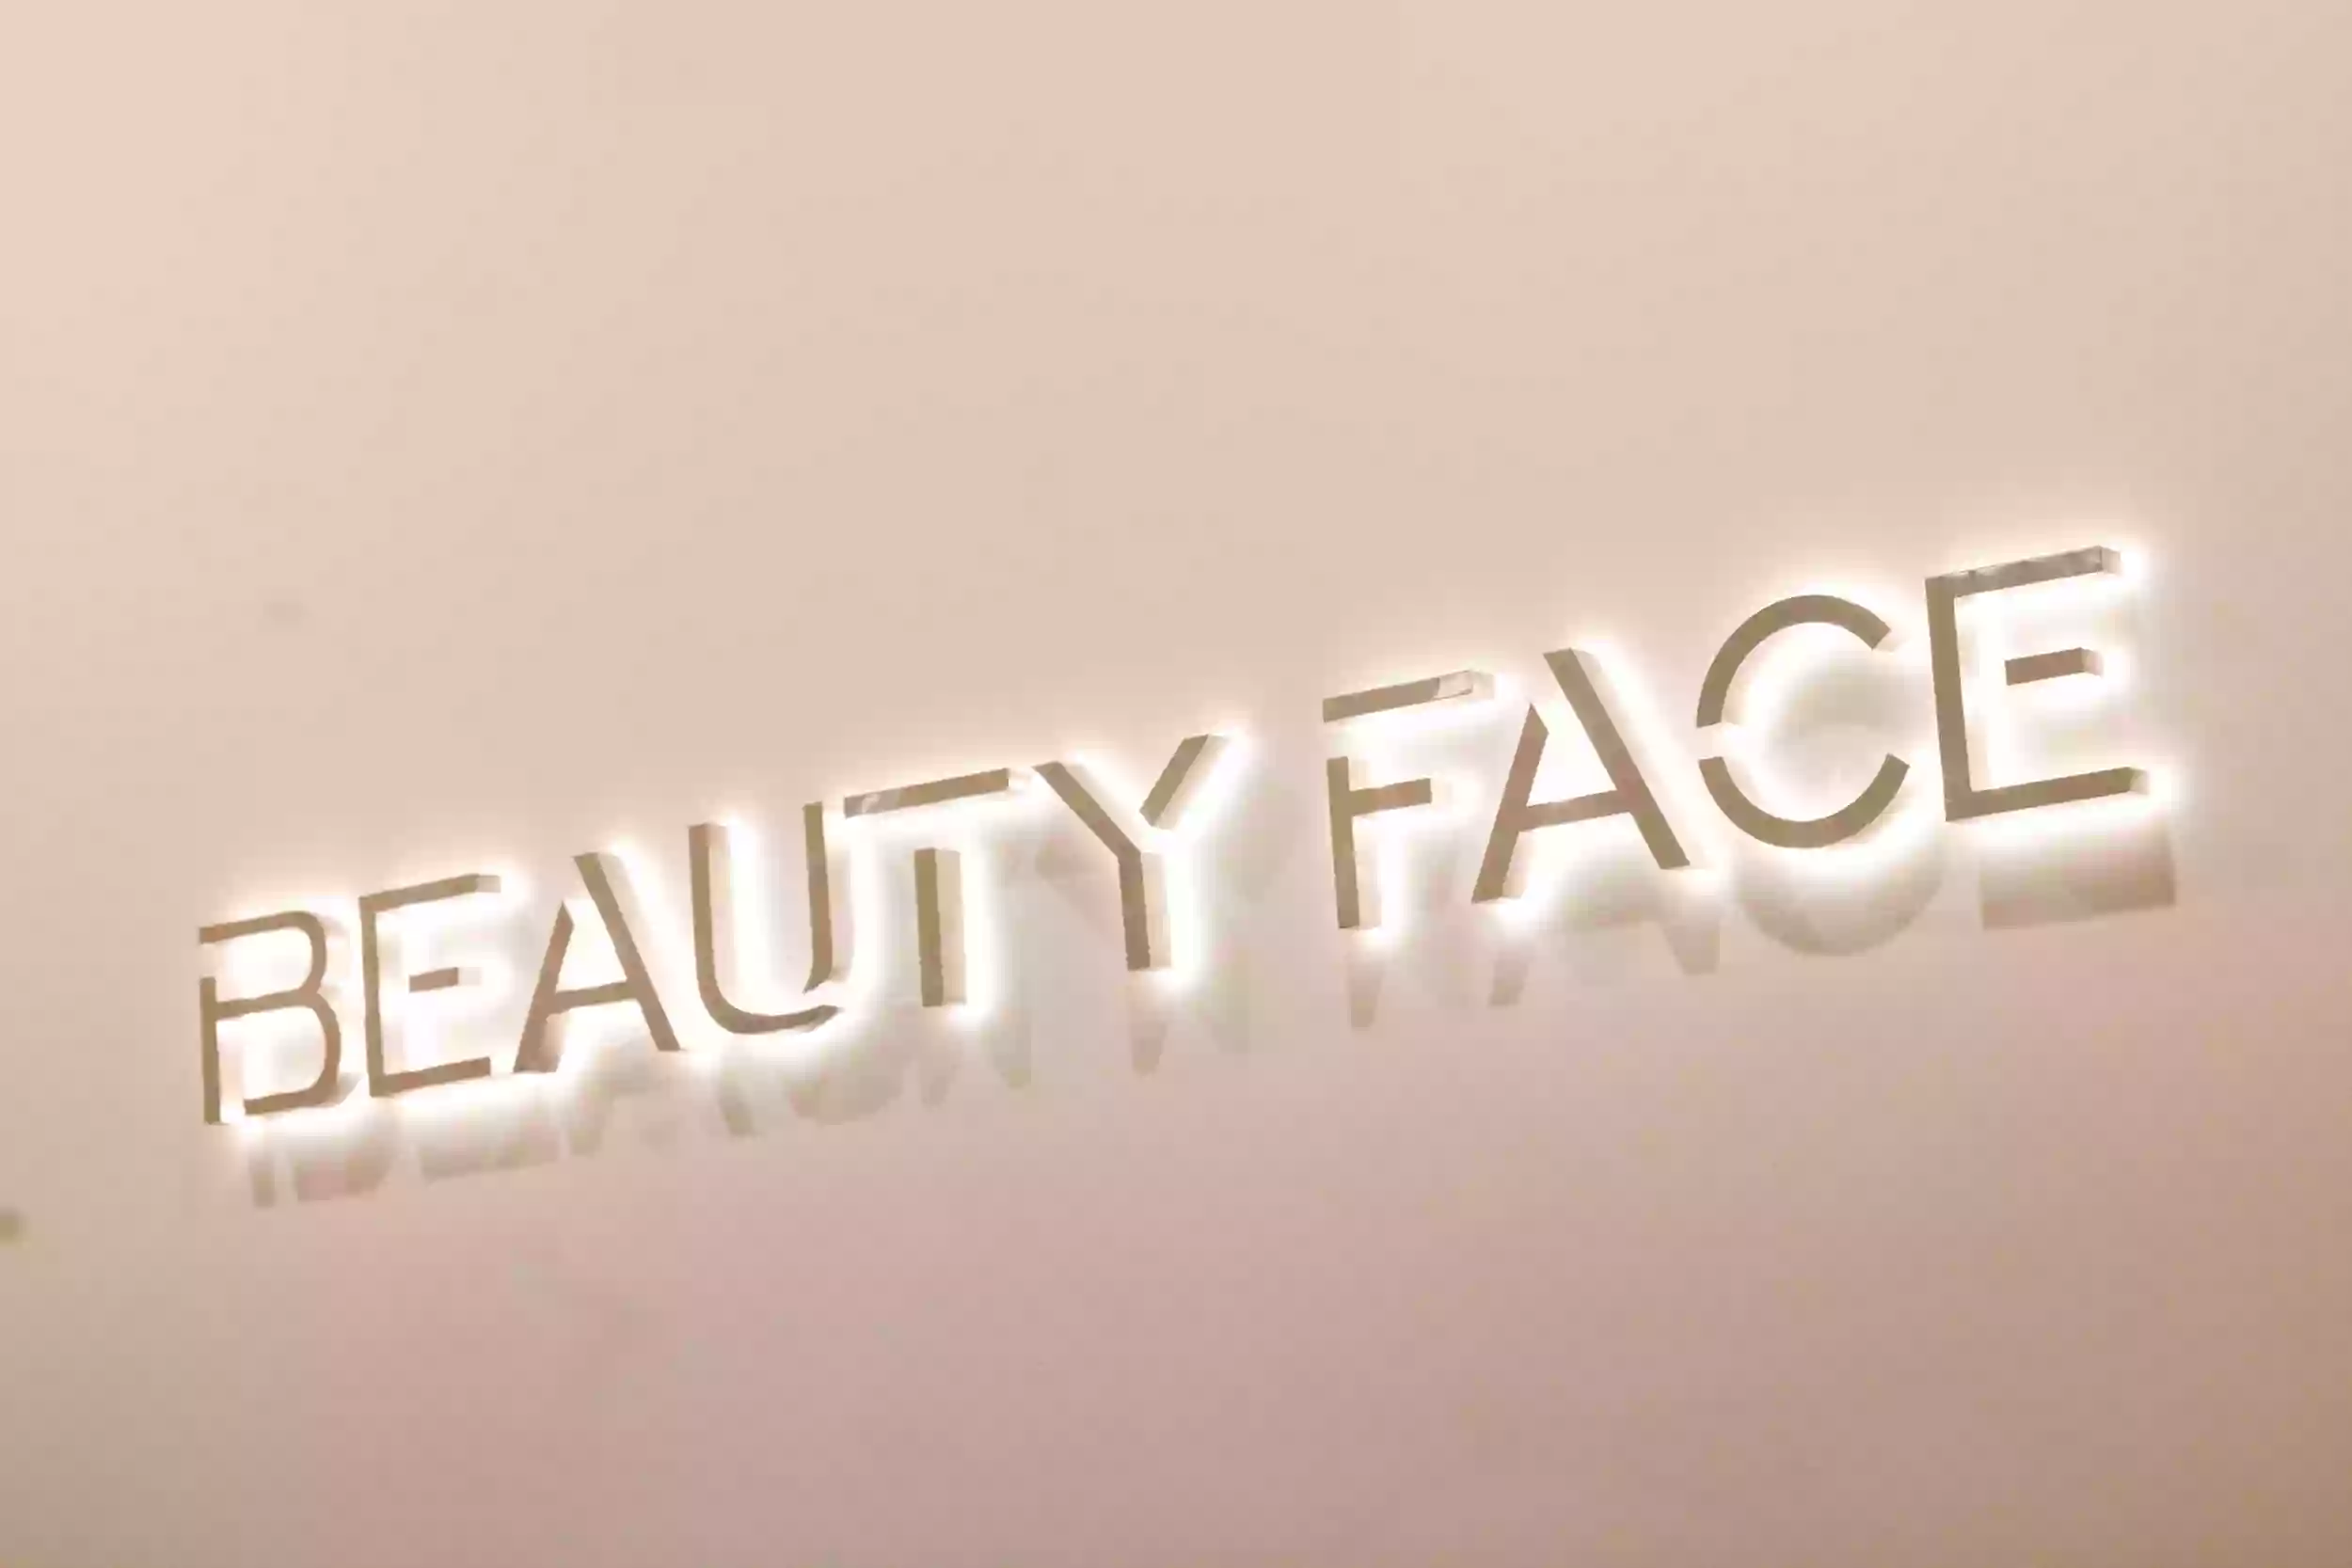 Beauty Face